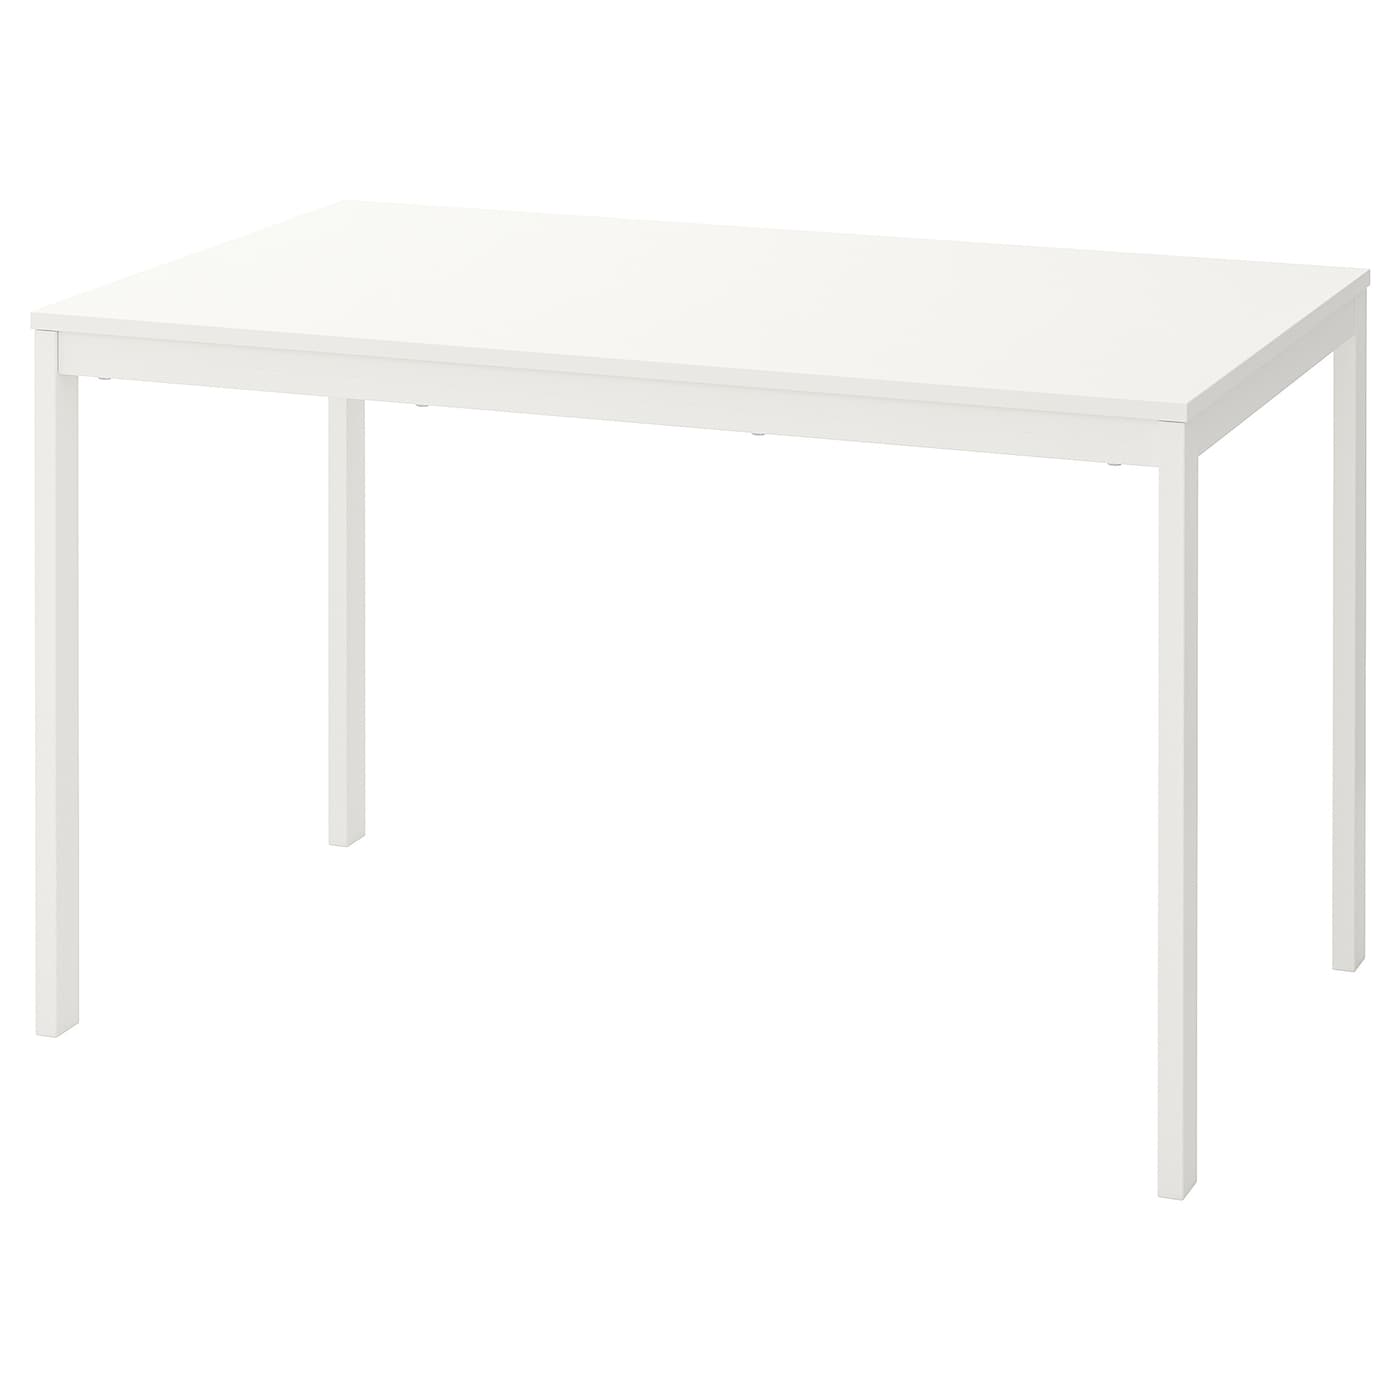 Раздвижной обеденный стол - IKEA VANGSTA, 180/120х75х73 см, белый, ВАНГСТА ИКЕА